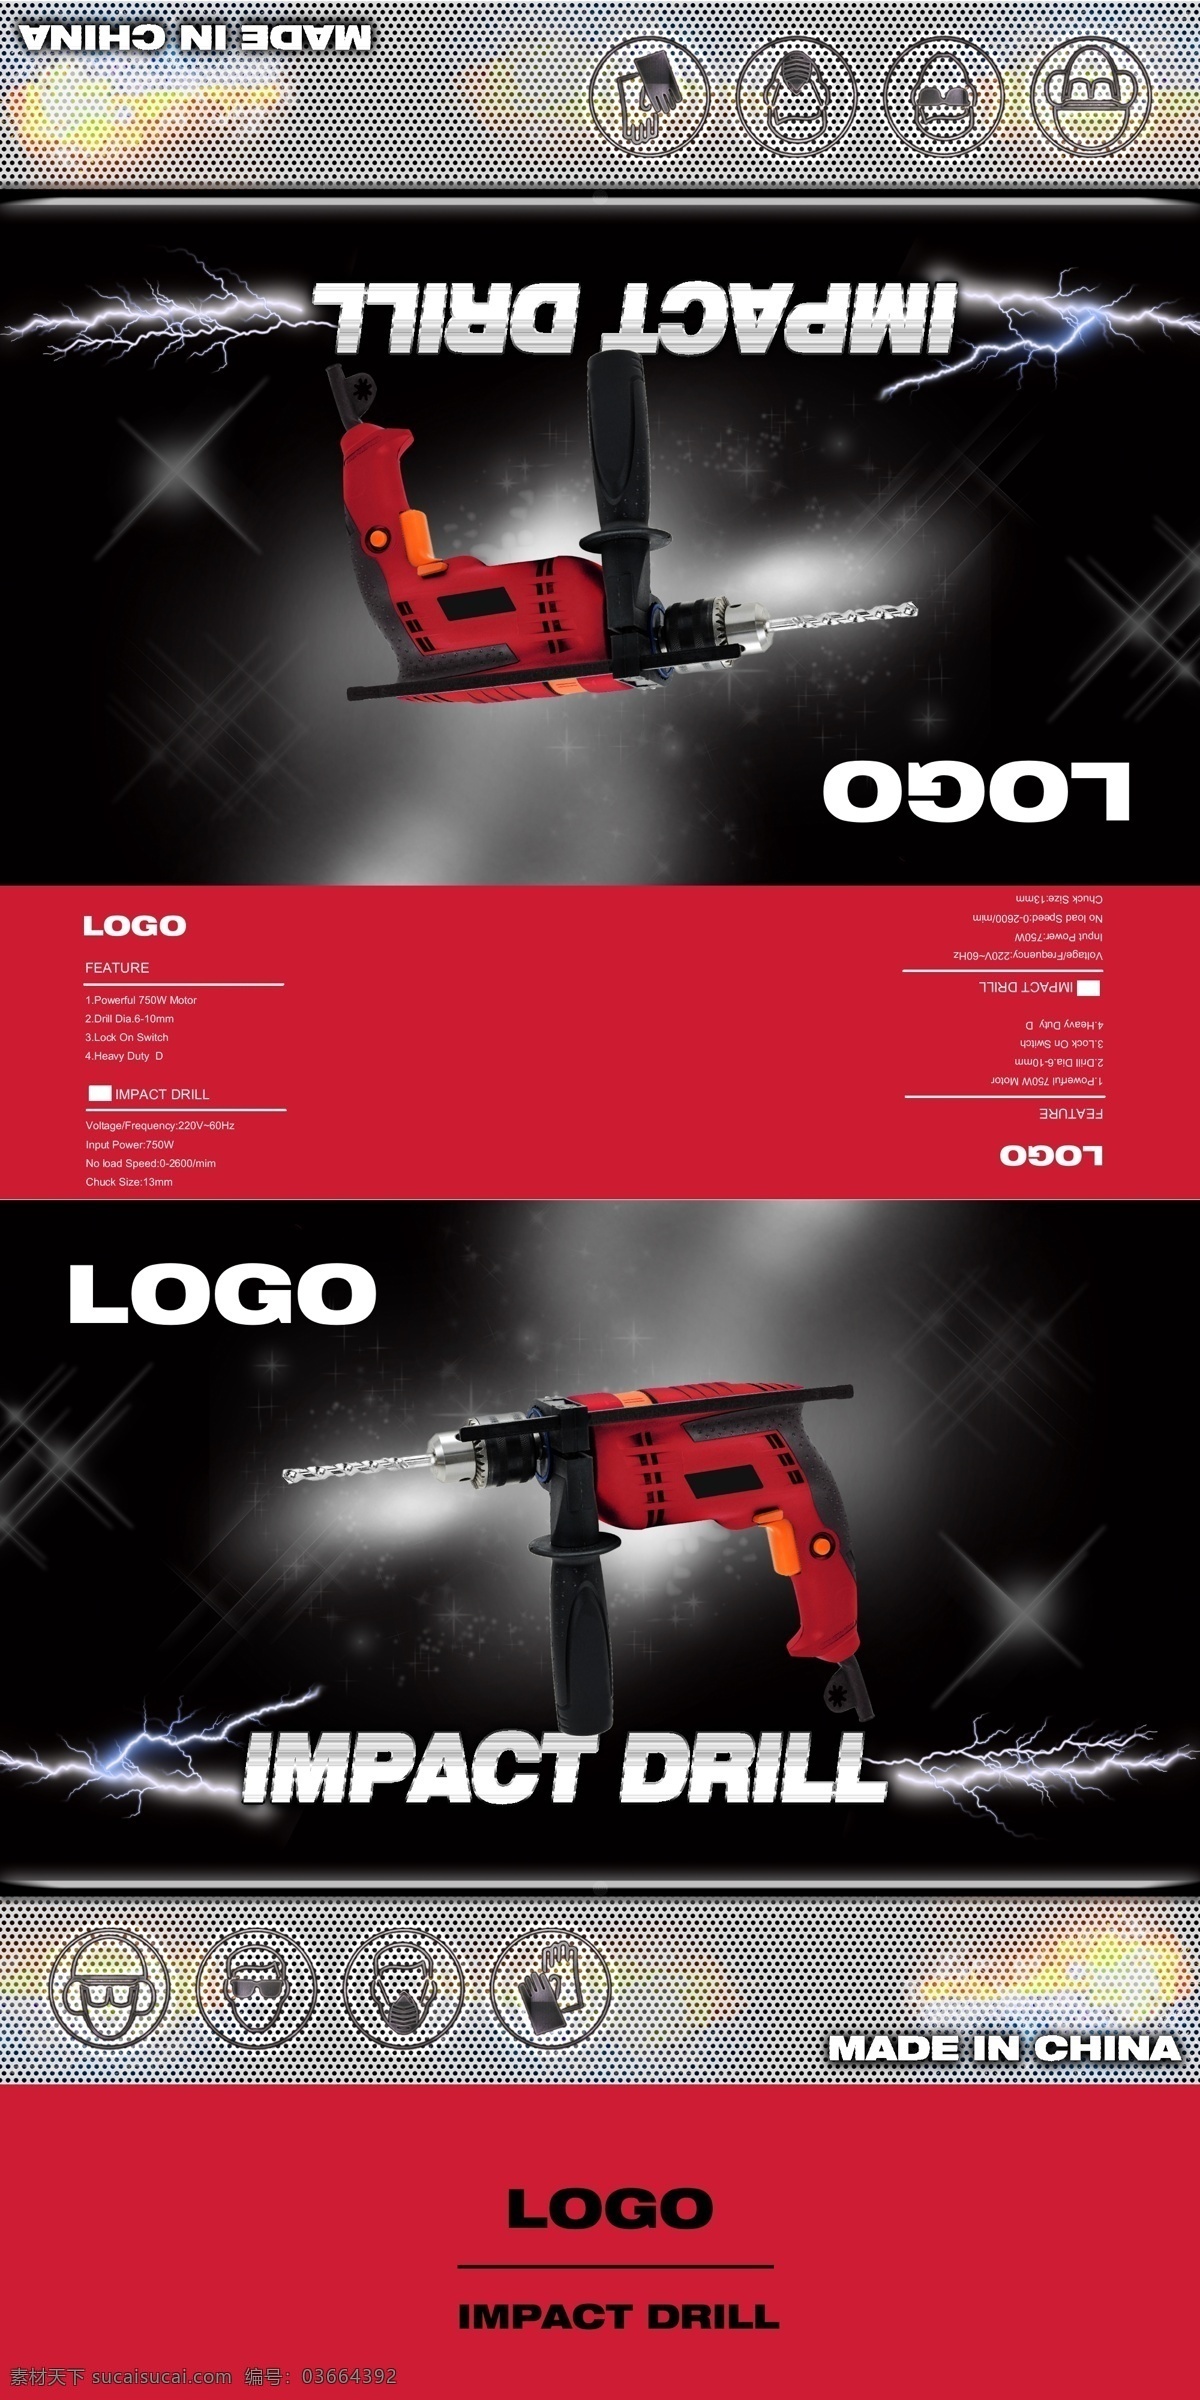 impact drill 电钻包装 冲击钻包装 包装设计 纸箱设计